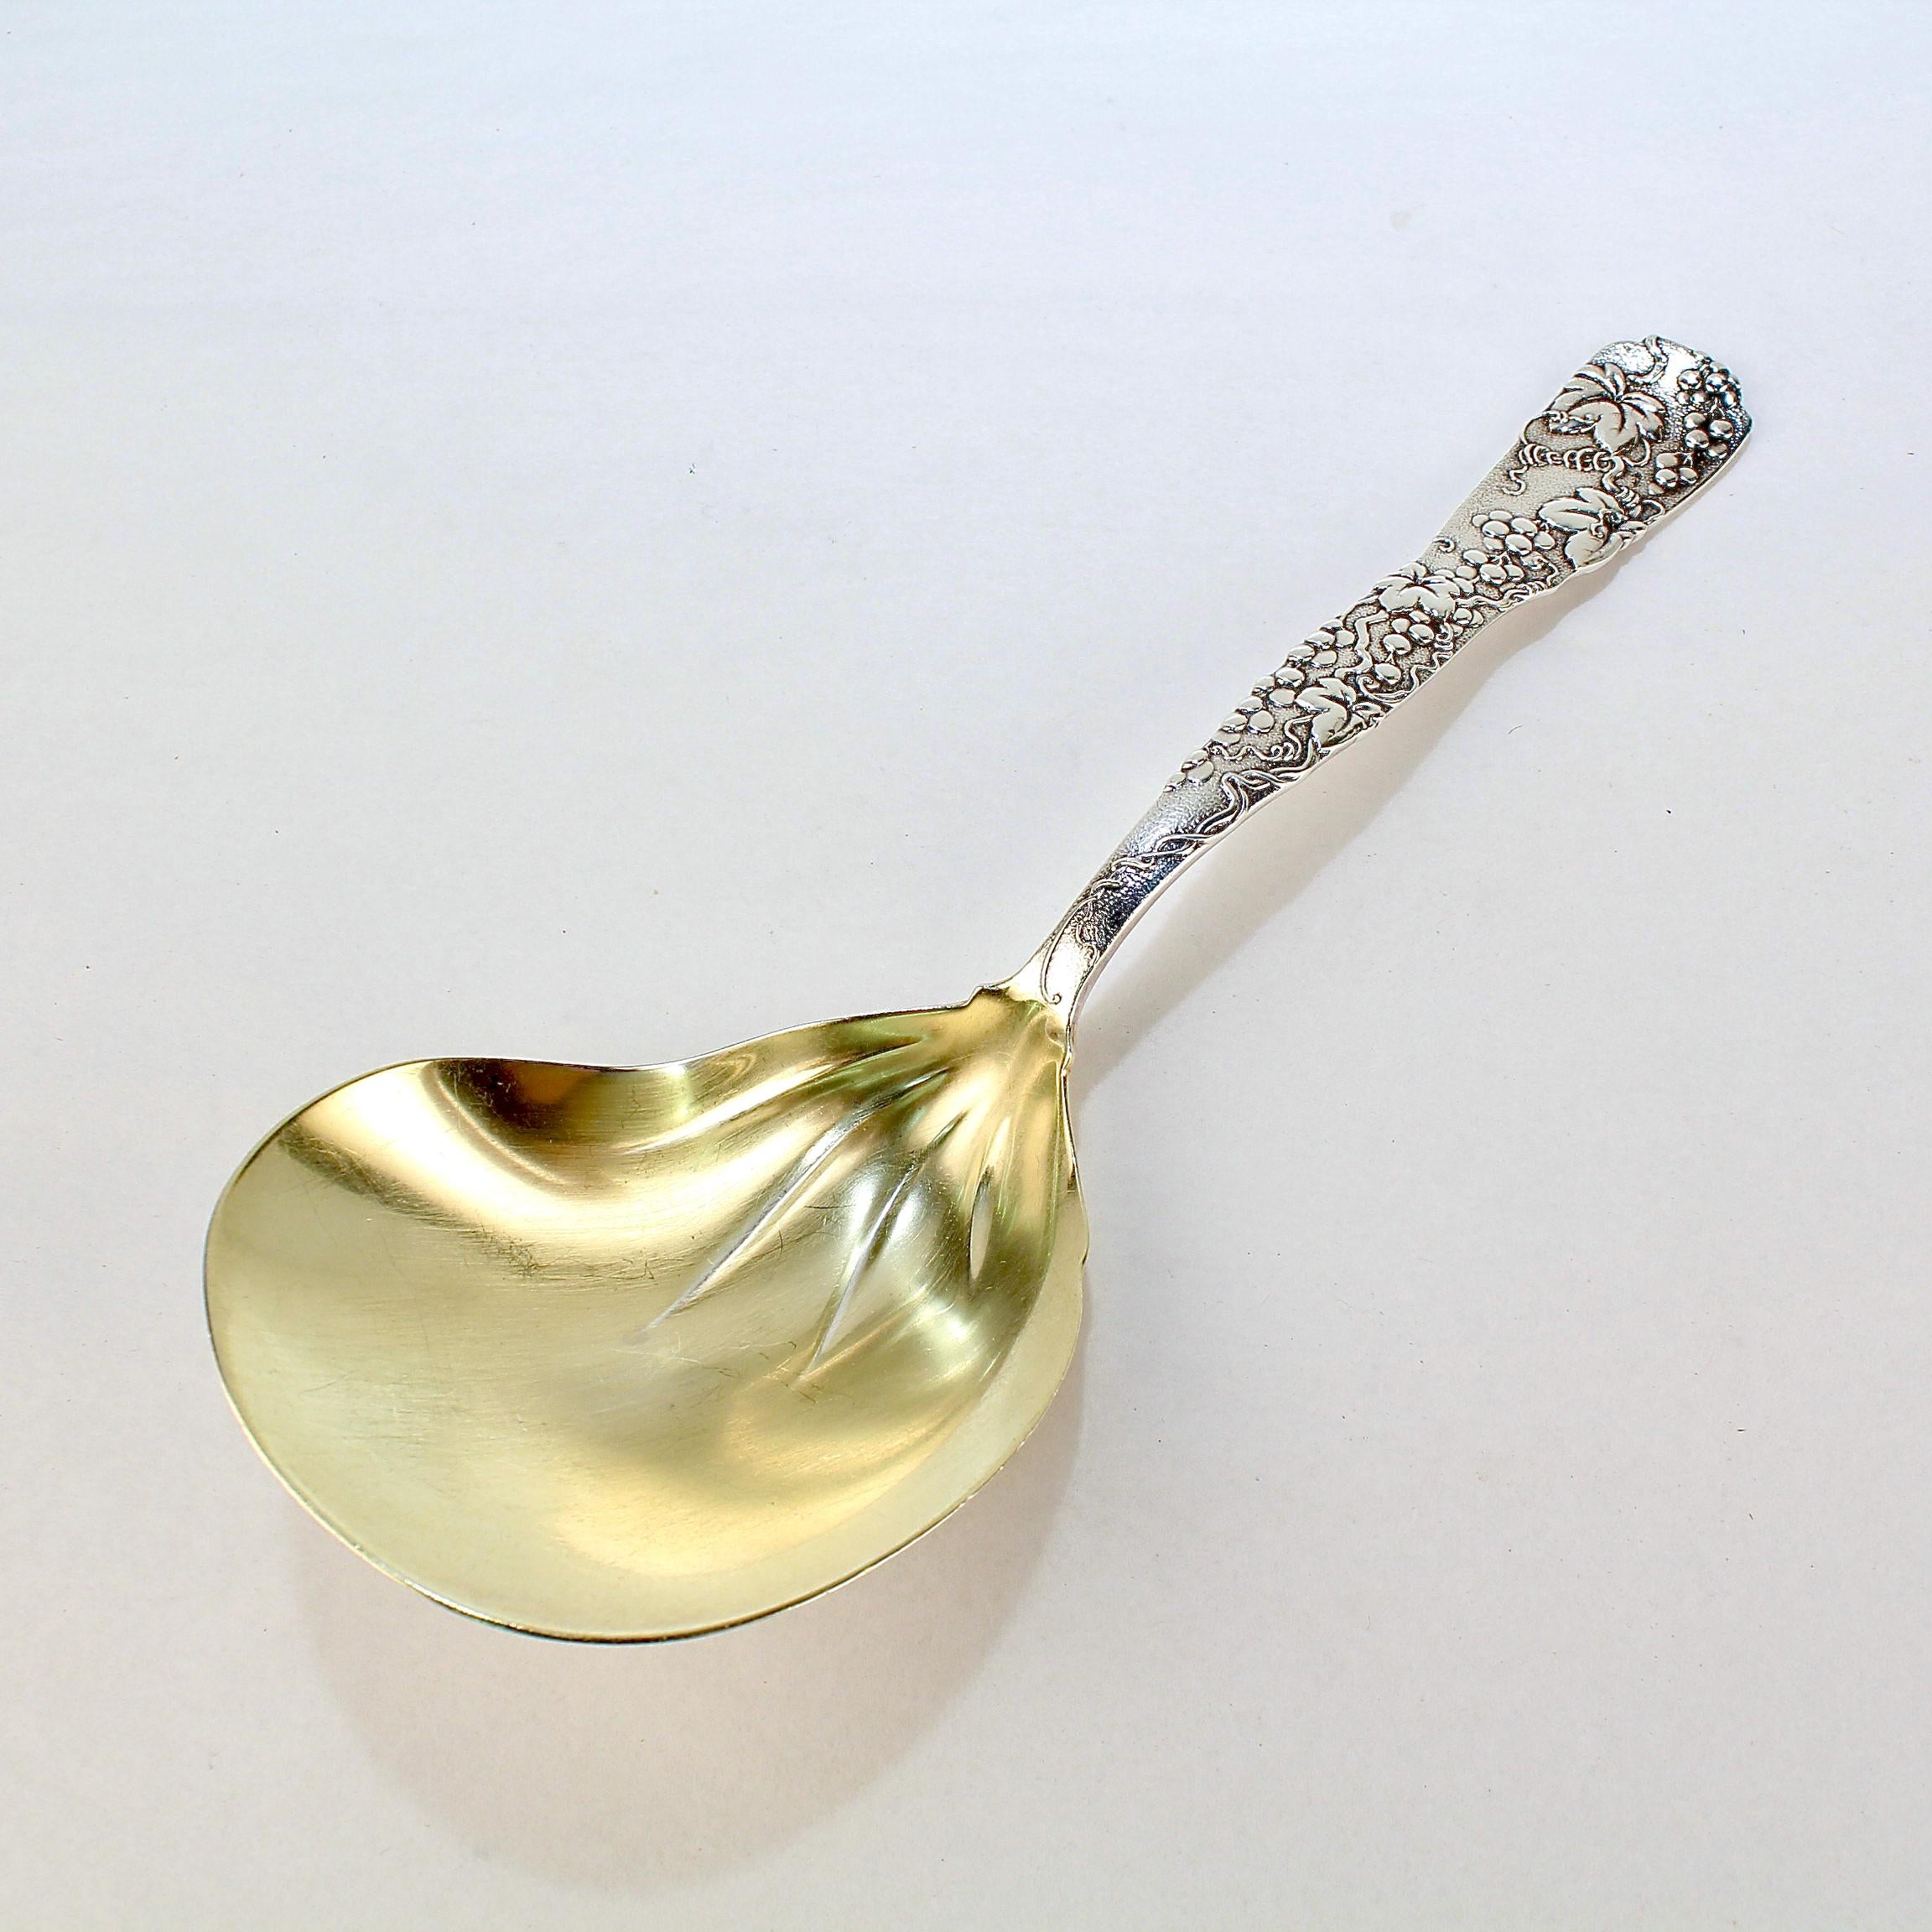 Eine sehr feine Tiffany & Co. Sterling Silber servieren oder Beerenlöffel.

Die Schale ist mit Gold überzogen.

Das Muster 